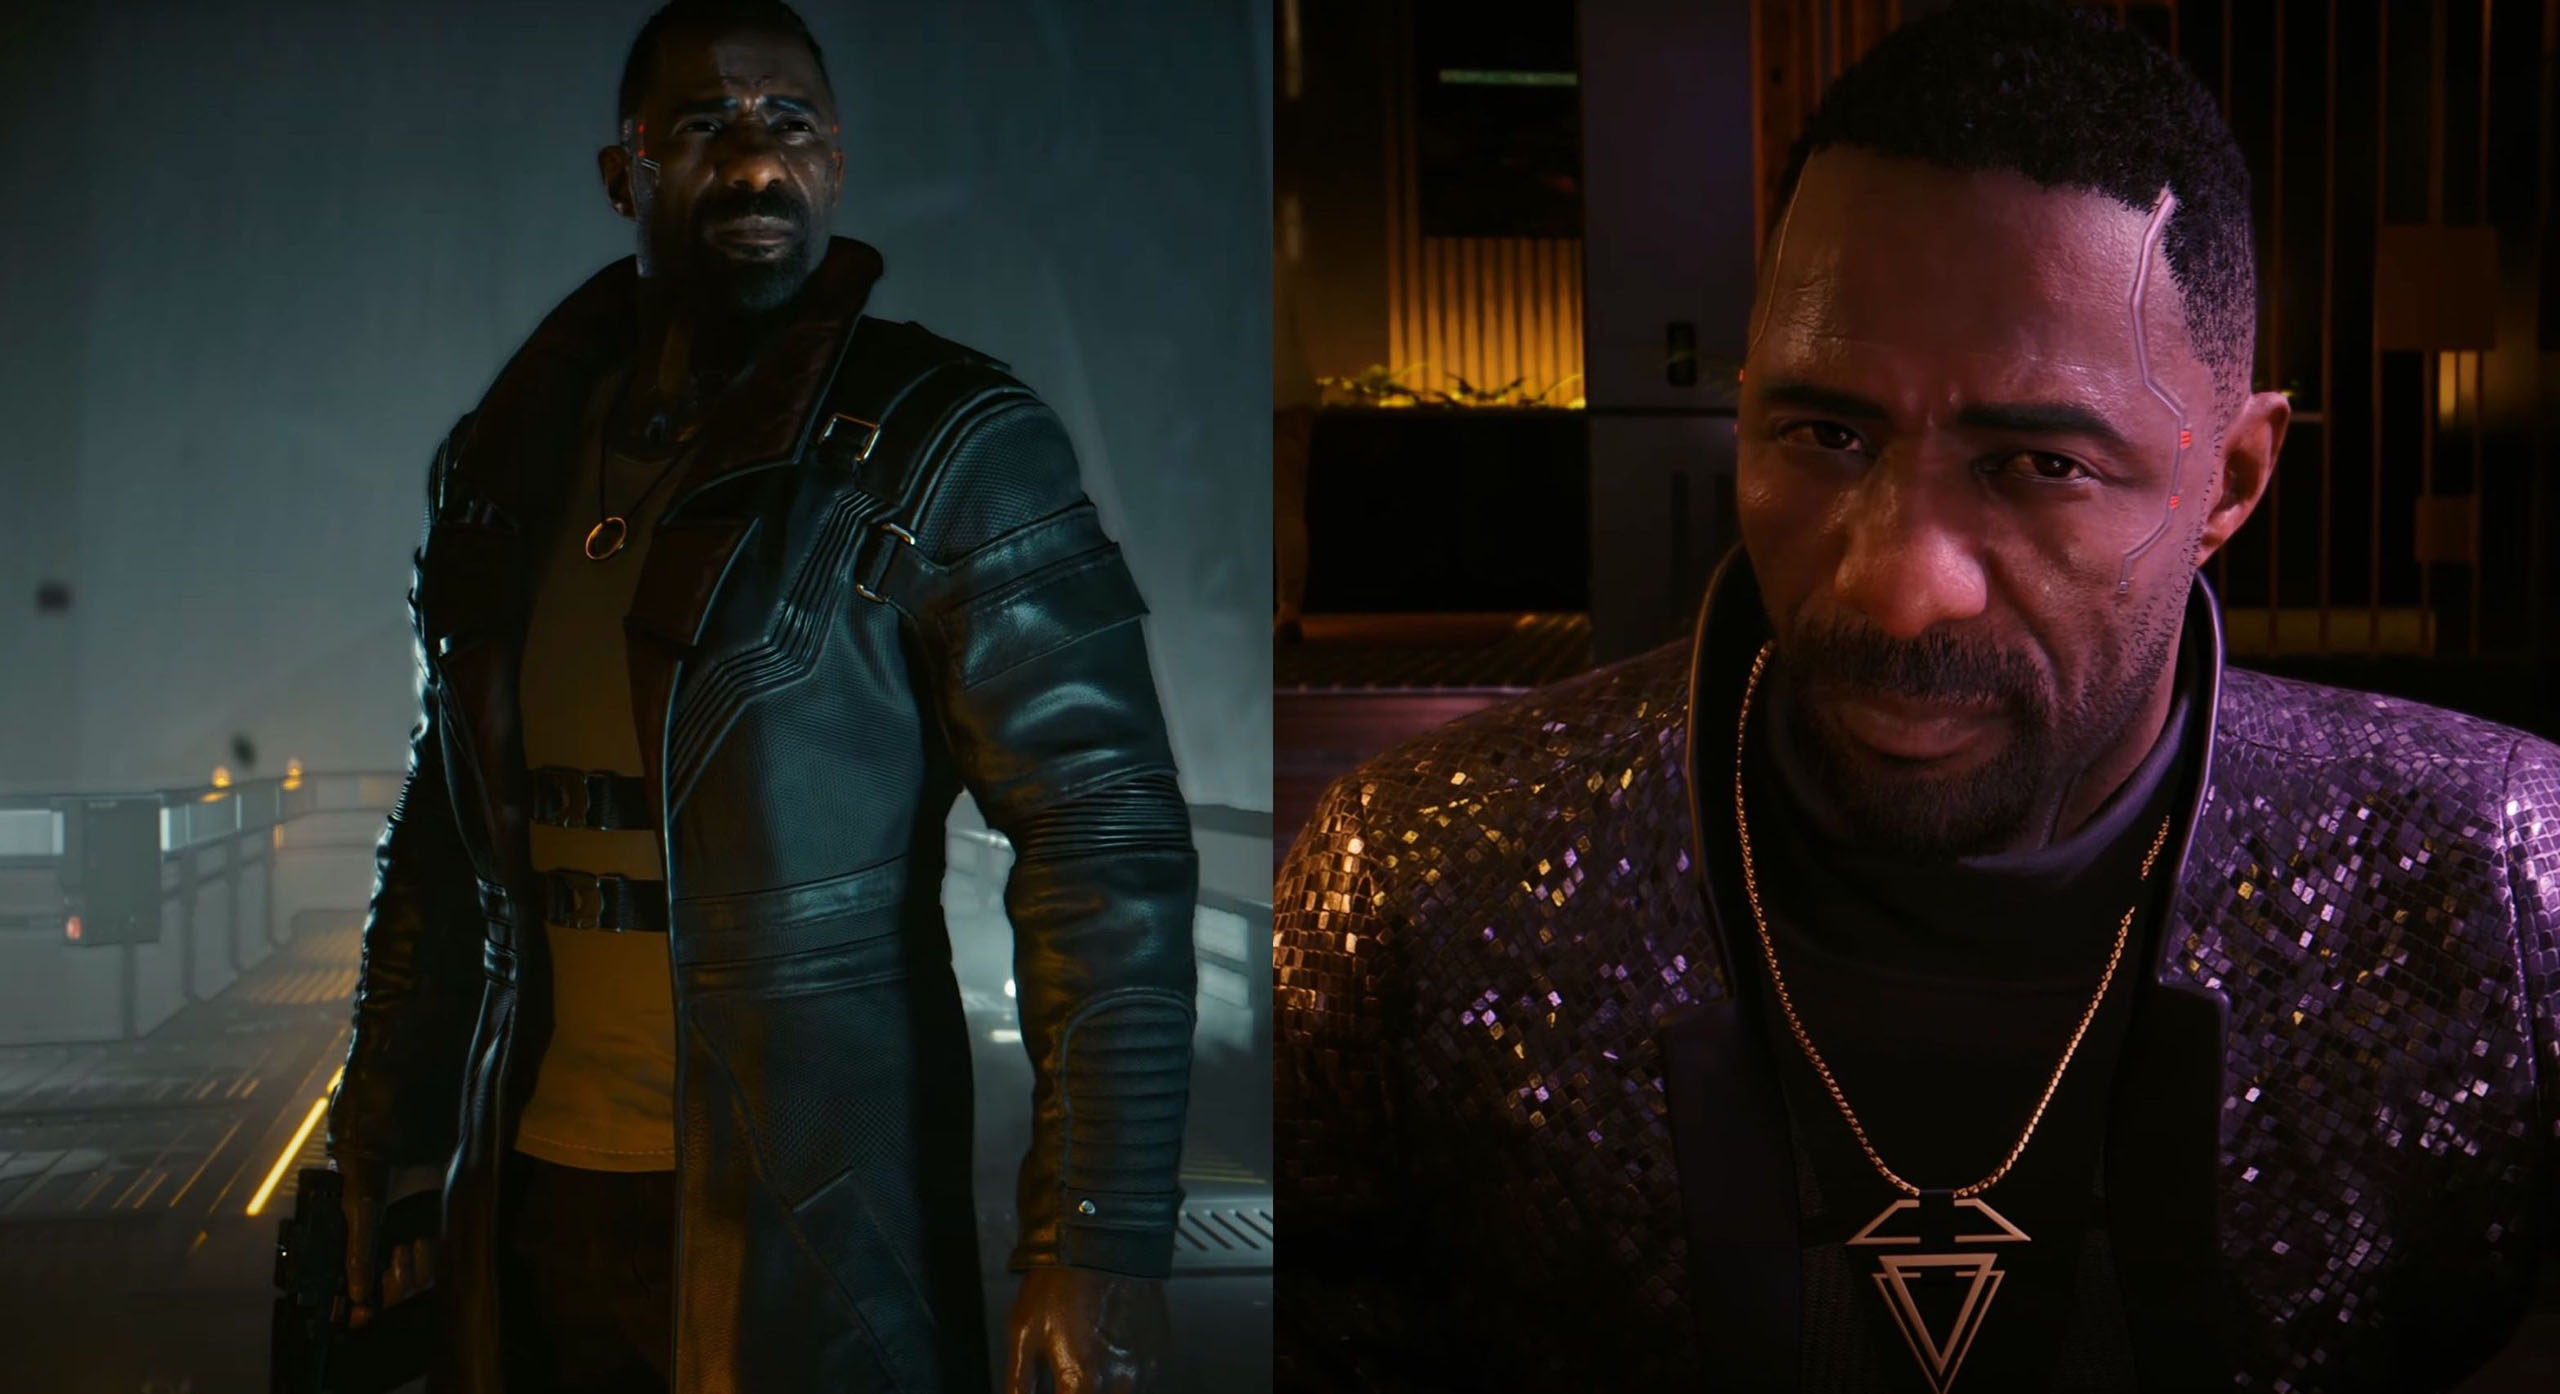 Idris Elba ist eine interessante Besatzung, weil er viele Rollen spielen kann: Der harte Haudegen, der einsame Wolf in Luther. Aber auch den Charme eines James Bond versprühenhen kann, was wir hier in dieser Szene sehen. Mit ihm kann CD Projekt viel variieren.